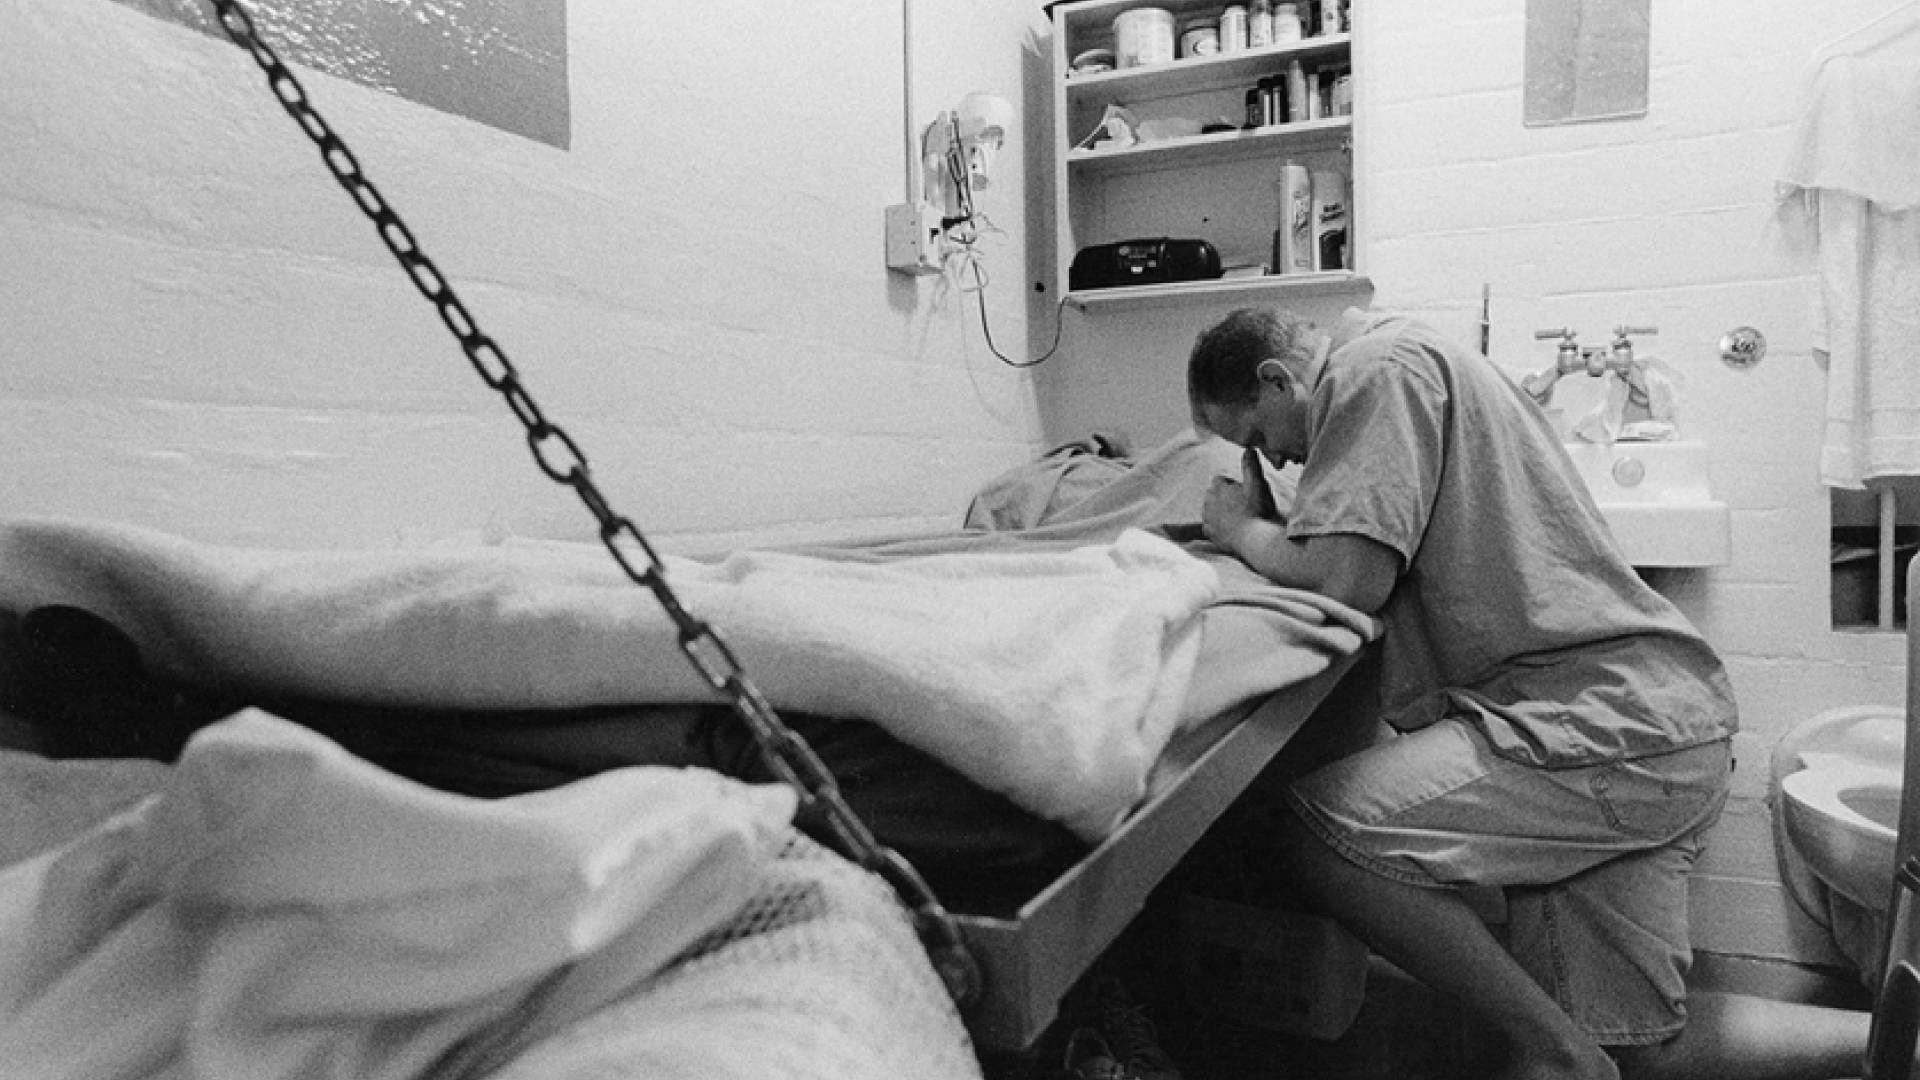 Man praying in prison cell